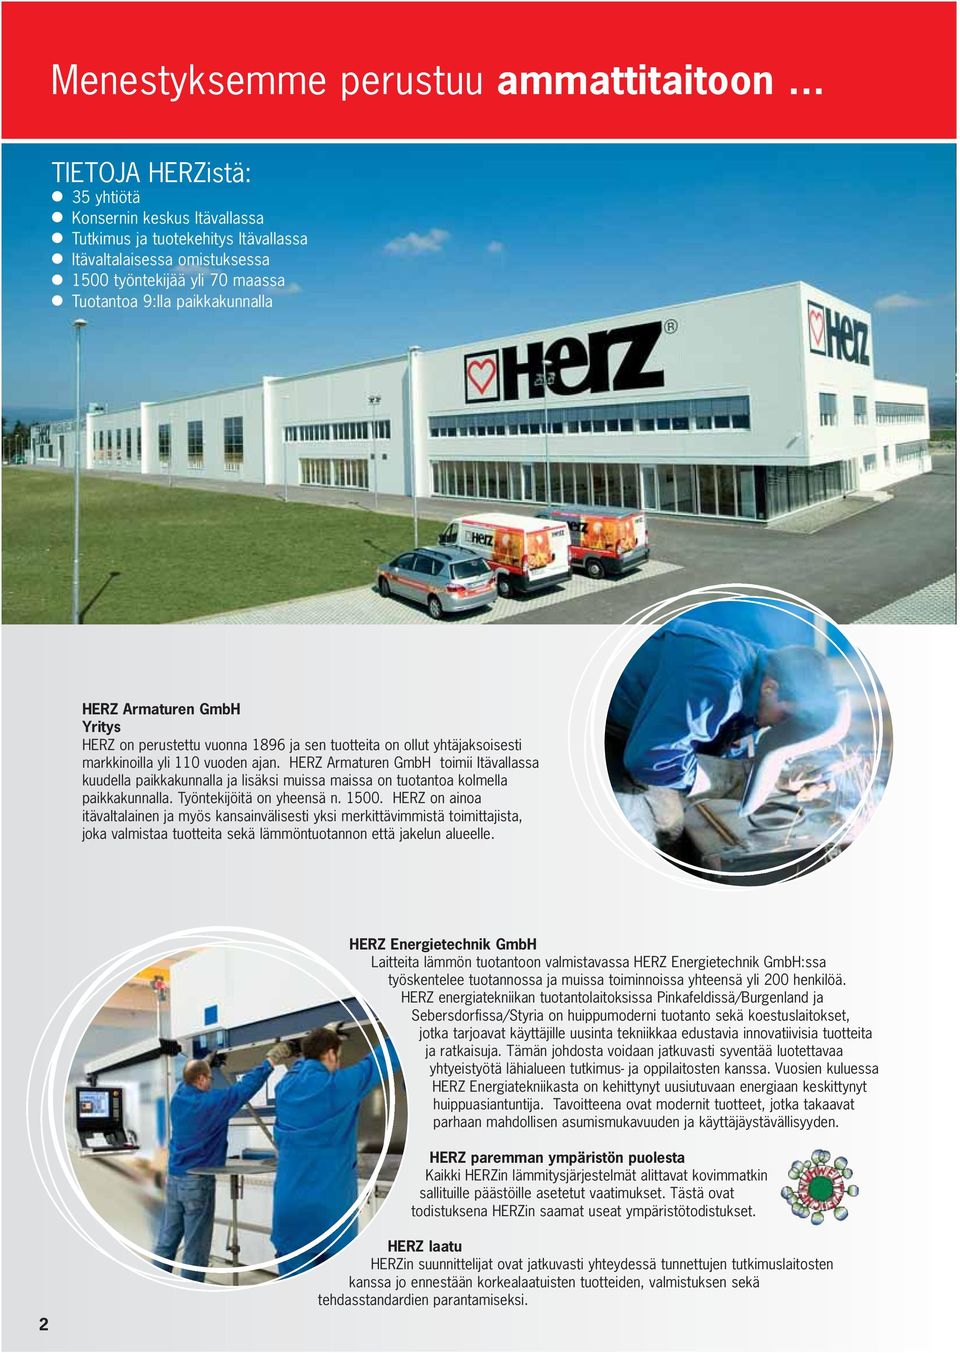 Armaturen GmbH Yritys HERZ on perustettu vuonna 1896 ja sen tuotteita on ollut yhtäjaksoisesti markkinoilla yli 110 vuoden ajan.